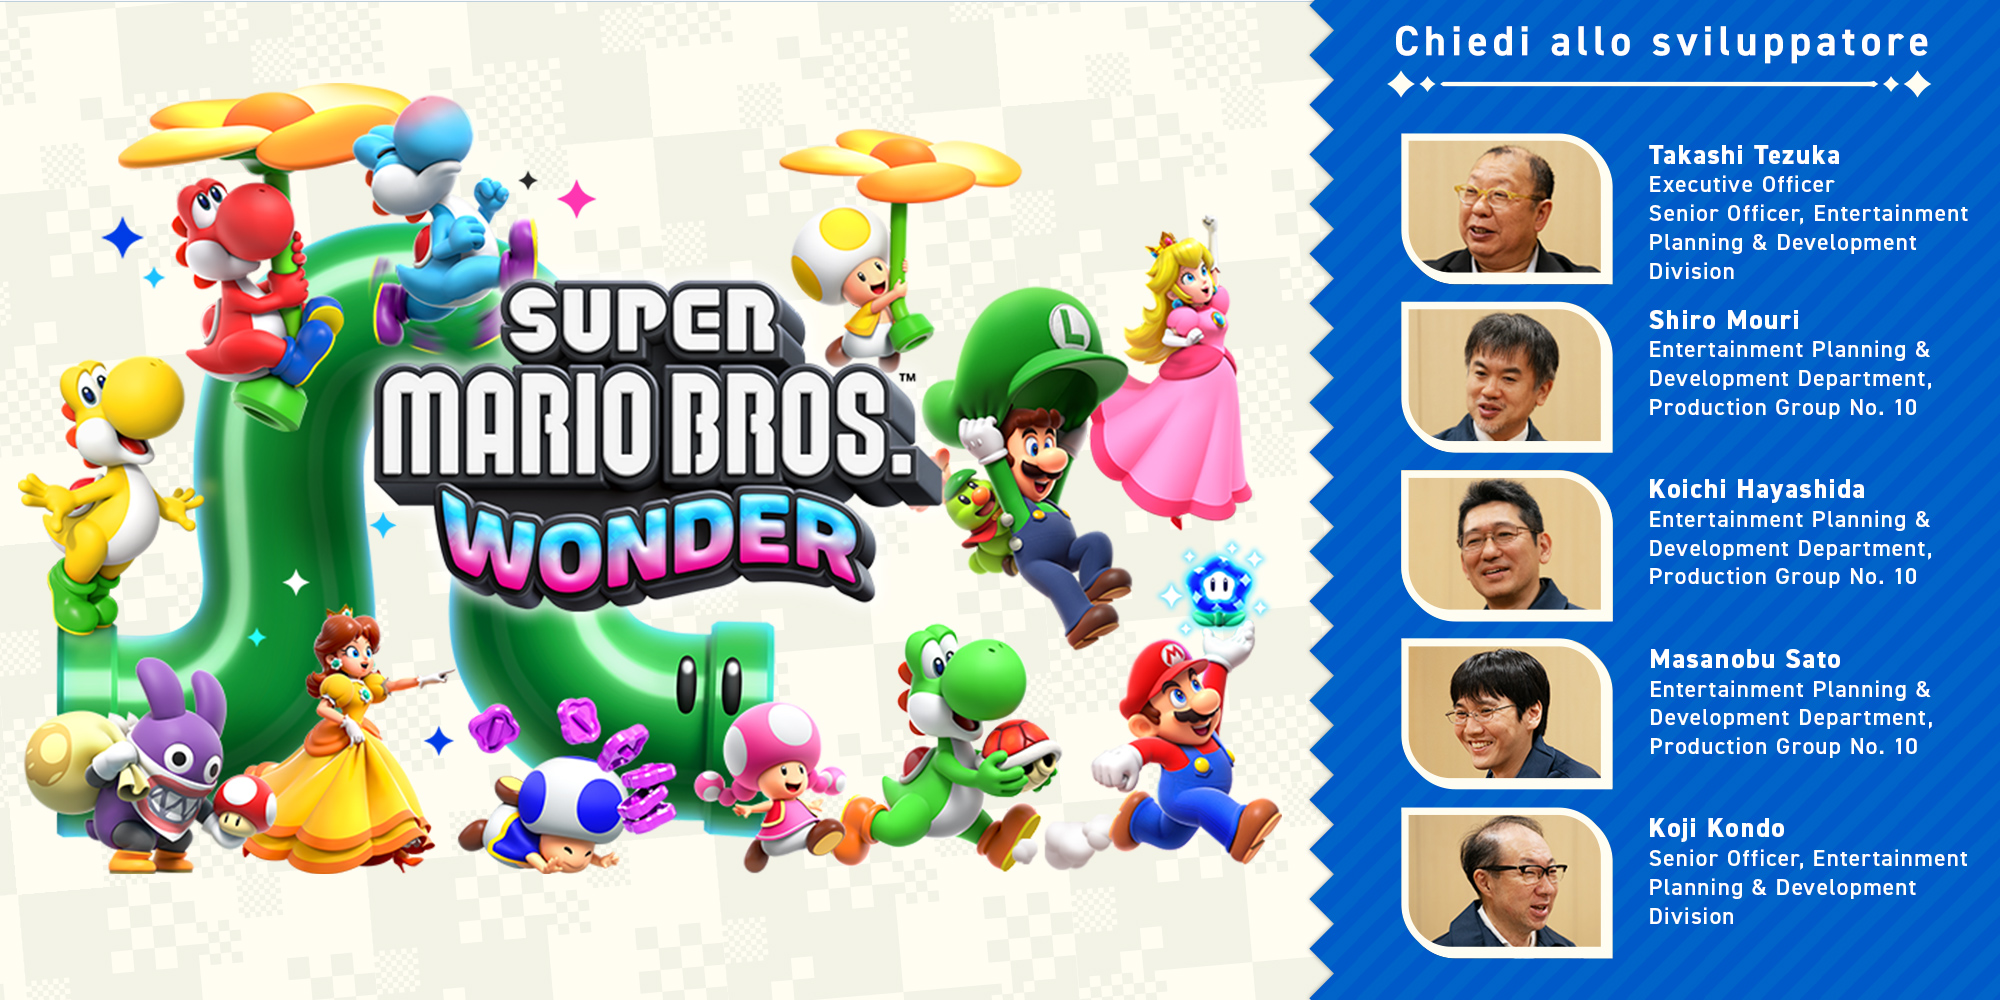 Chiedi allo sviluppatore, parte 11: Super Mario Bros. Wonder – Capitolo 2